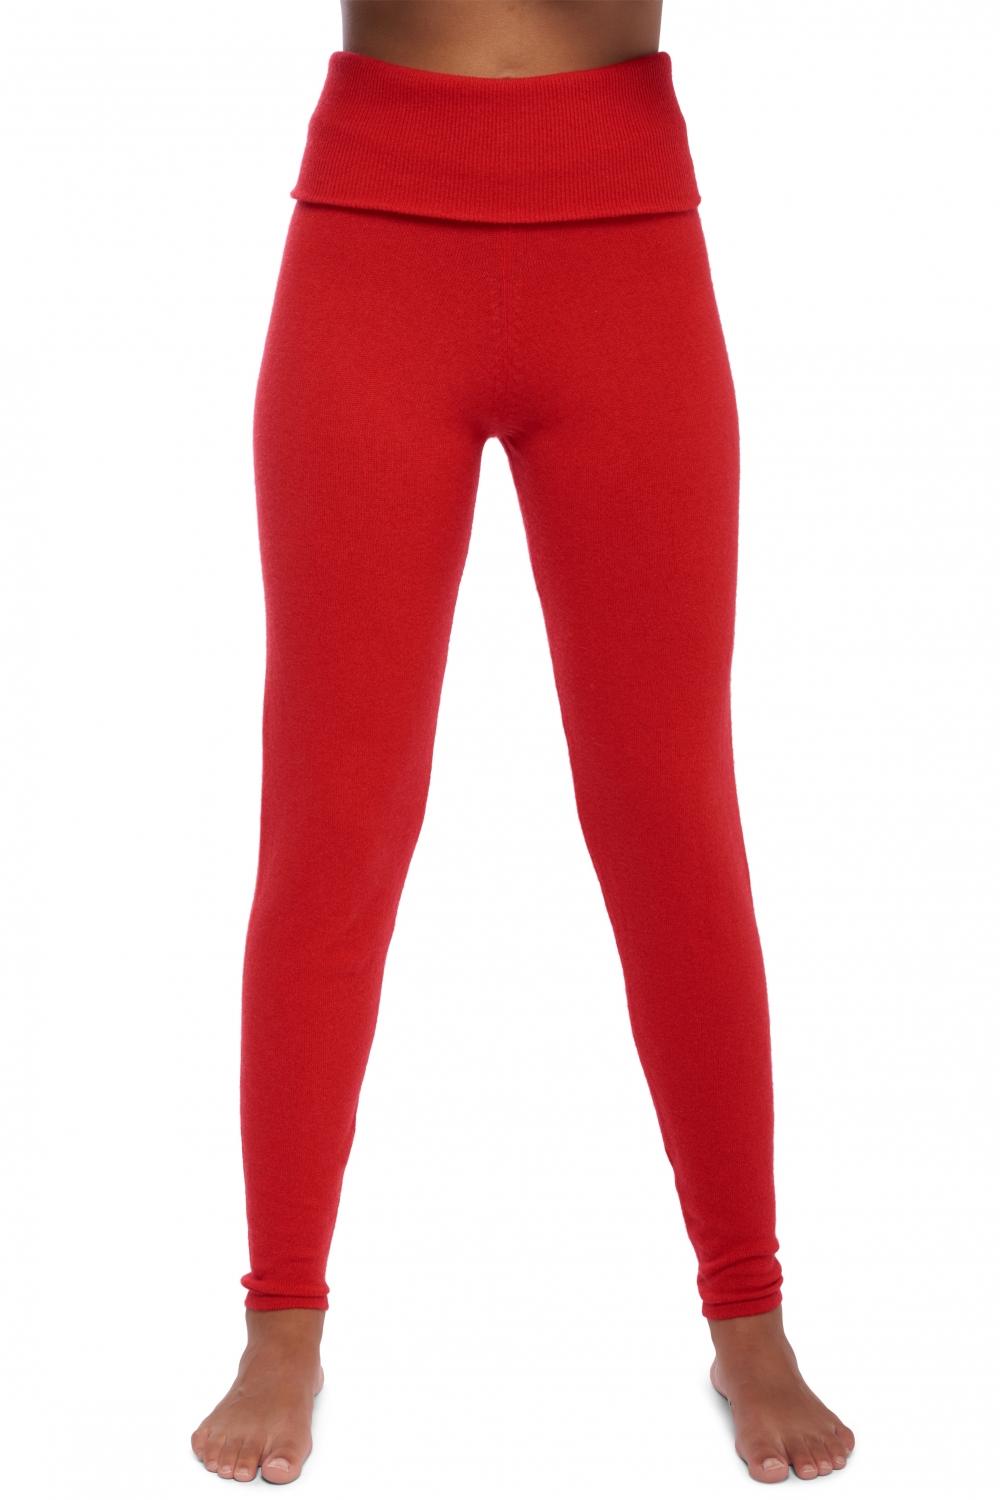 Cachemire pantalon legging femme shirley rouge xs